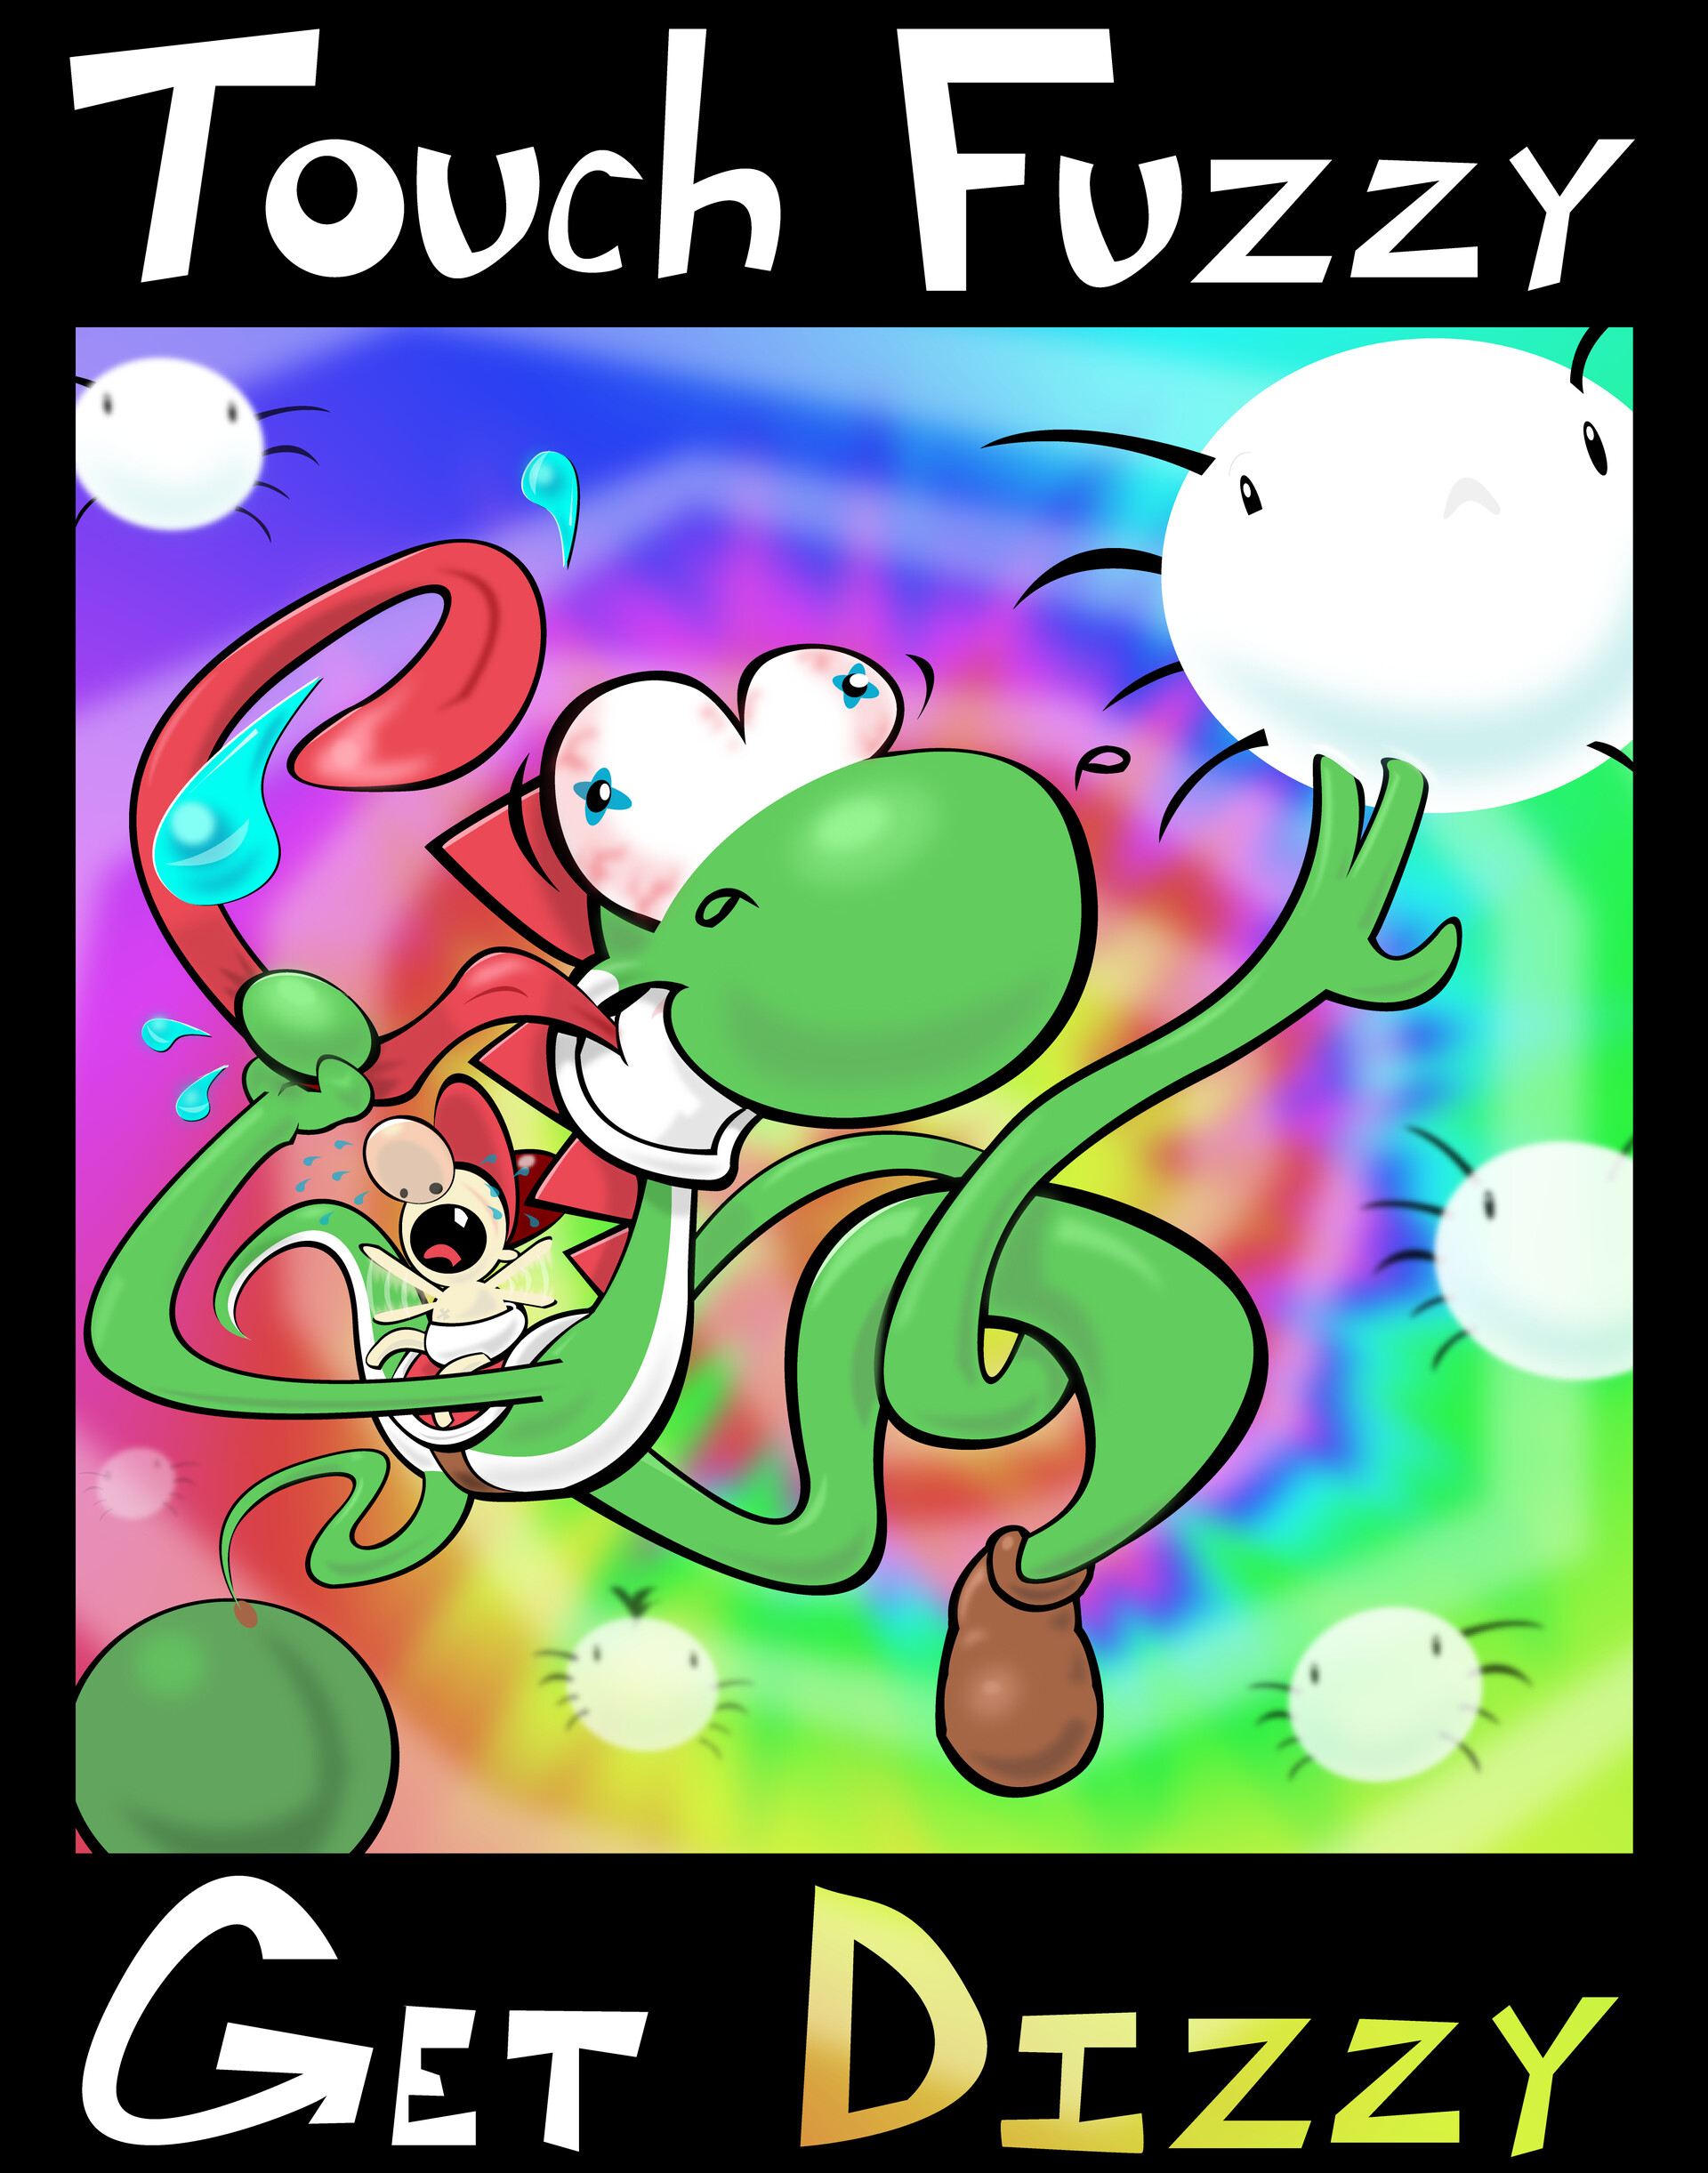 touch fuzzy get dizzy